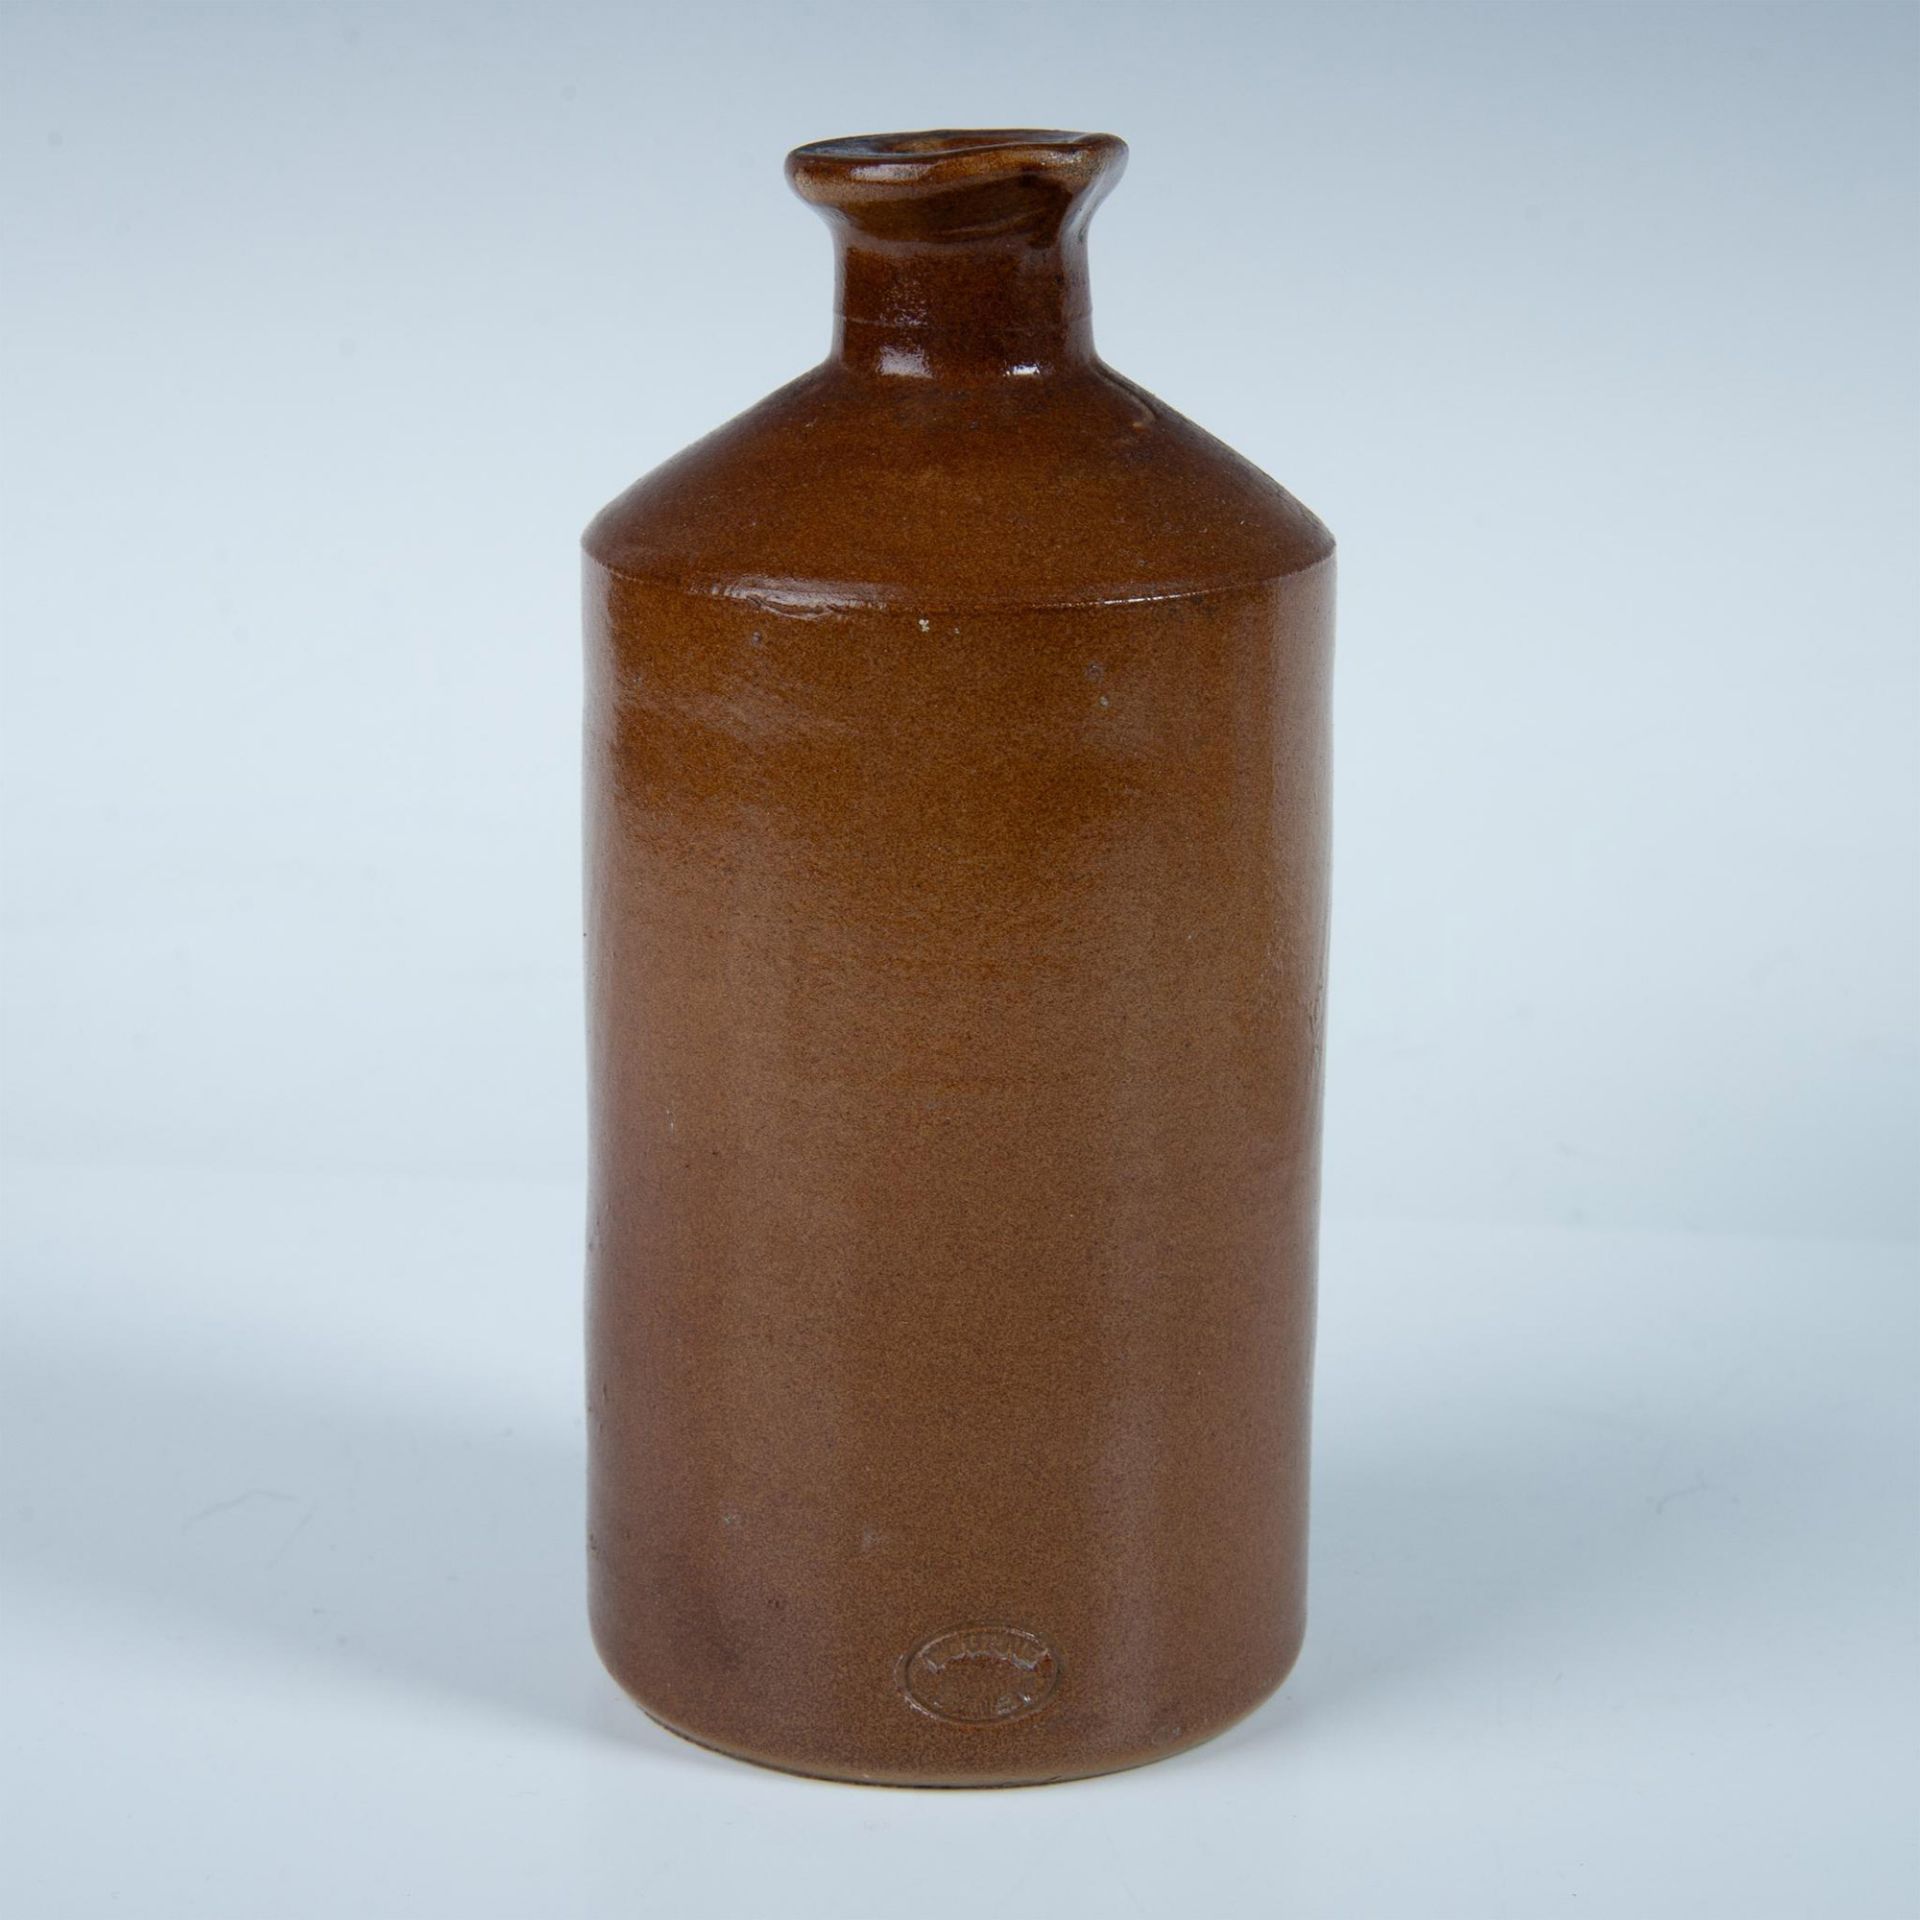 Antique Bourne Denby Stoneware Ink Bottle - Image 2 of 6